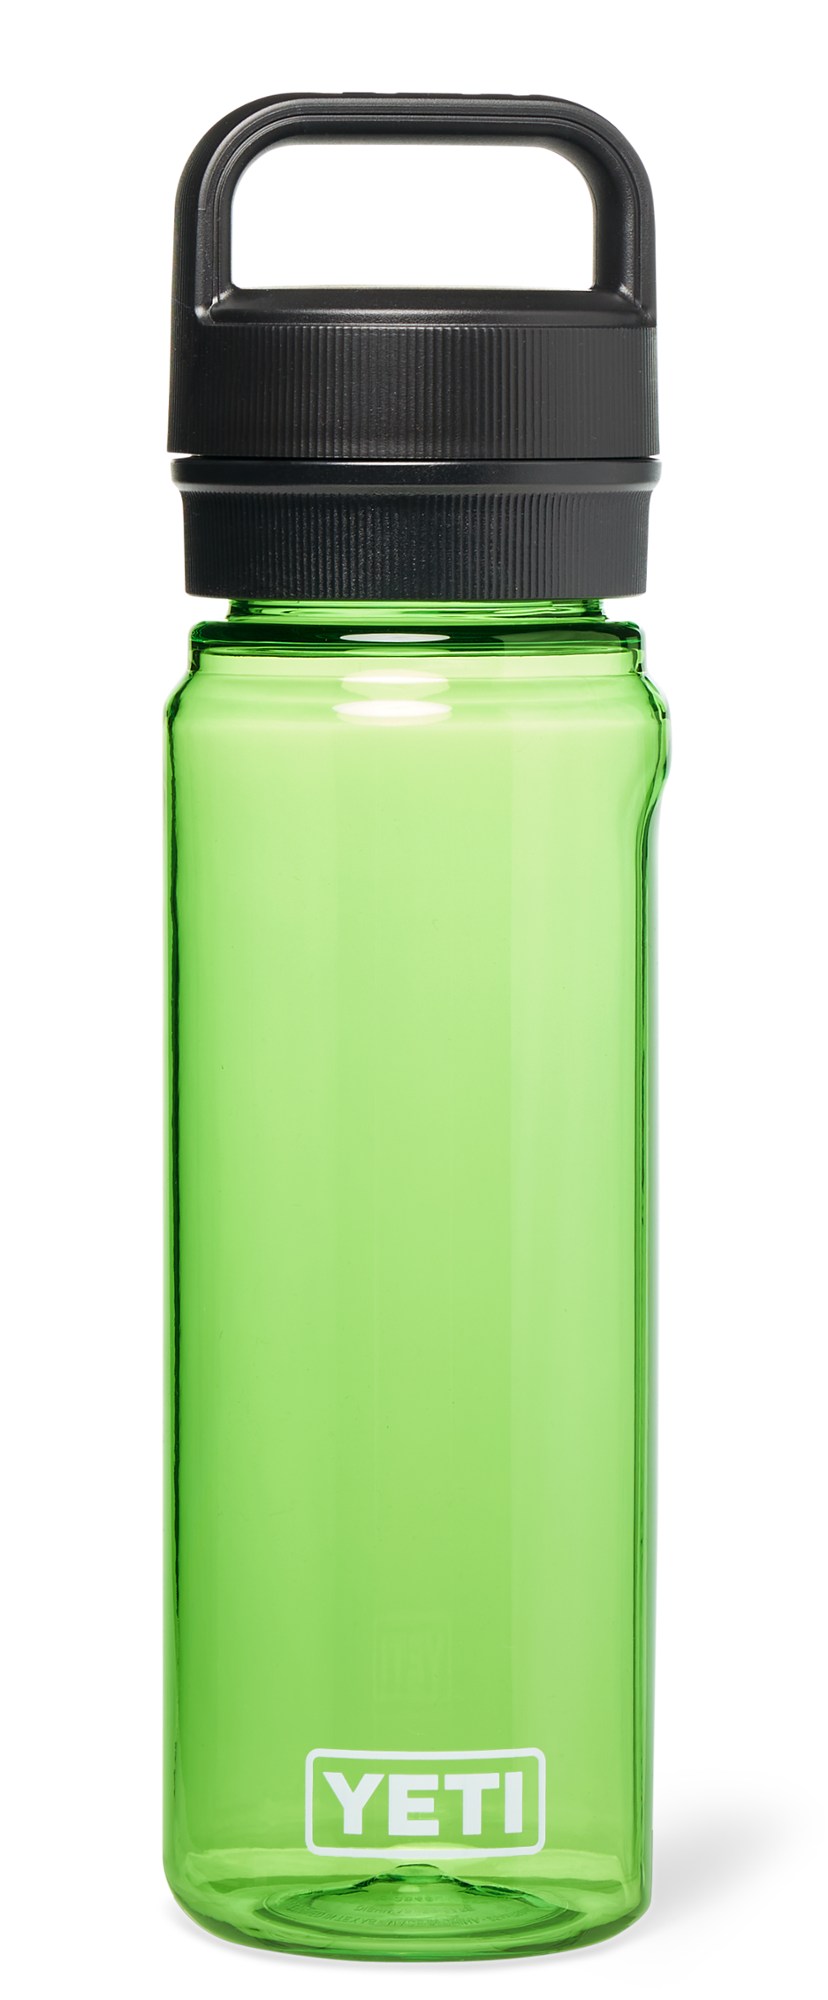 Бутылка для воды Yonder с крышкой Yonder Chug - 25 эт. унция YETI, зеленый